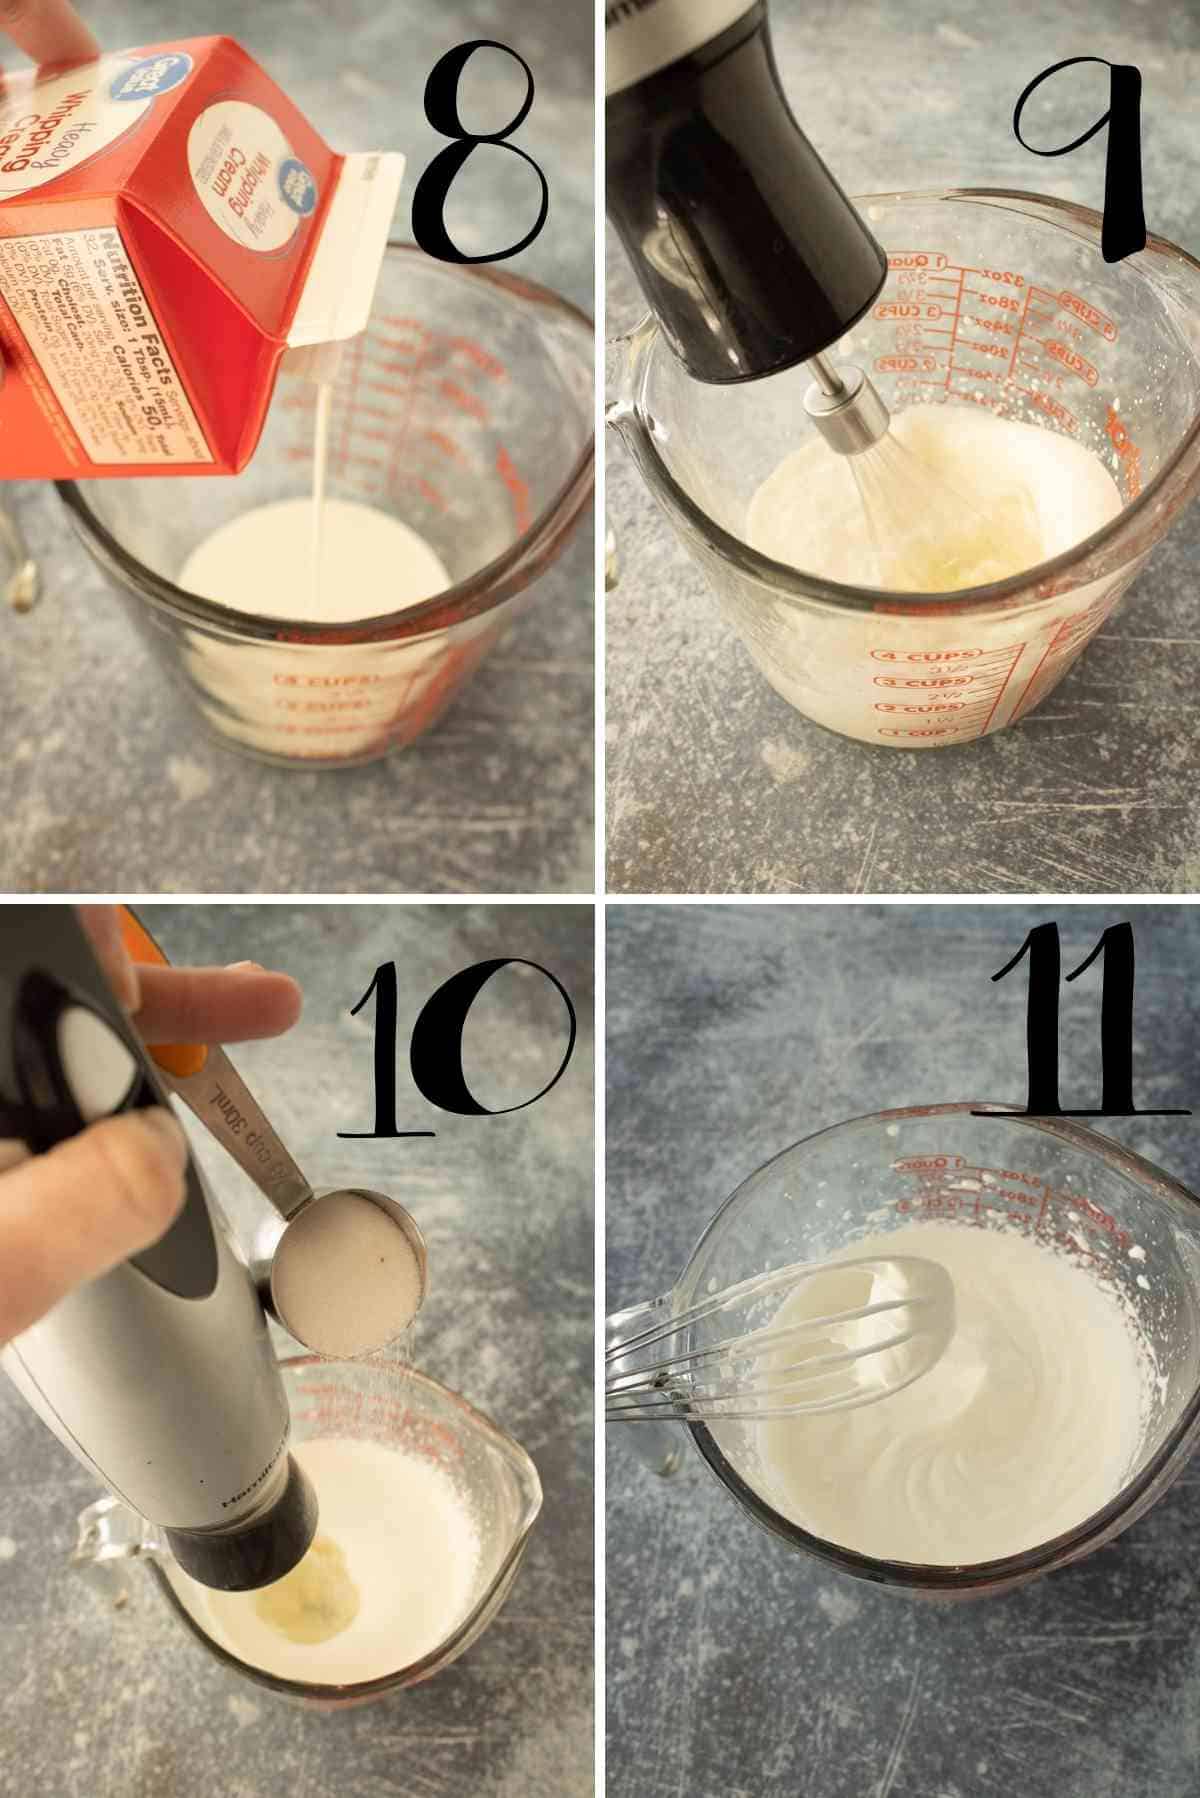 Whip the cream, vanilla, and powdered sugar to stiff peaks.